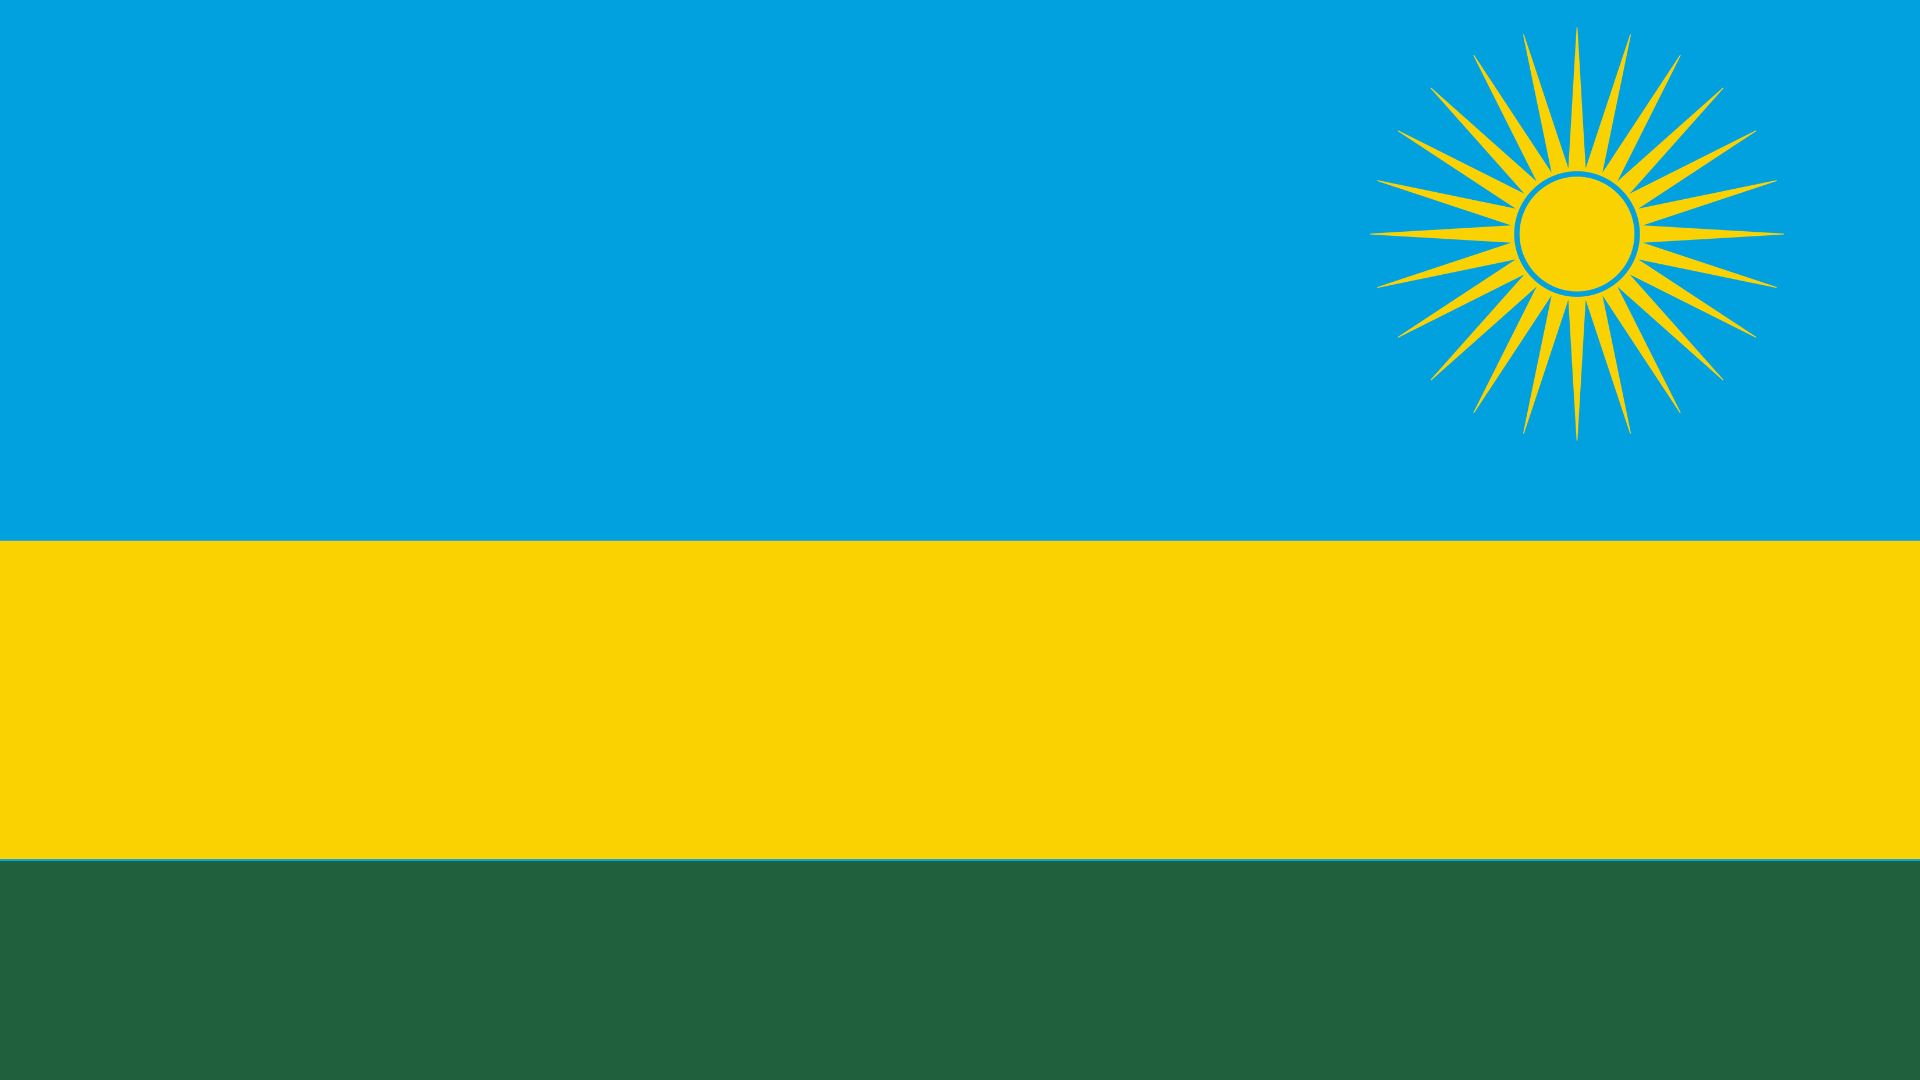 A bandeira é composta de quatro cores: azul, verde e dois tipos de amarelo.  A cor azul representa felicidade e paz, a faixa amarela simboliza desenvolvimento econômico, e a faixa verde simboliza esperança e prosperidade. O sol representa iluminação.